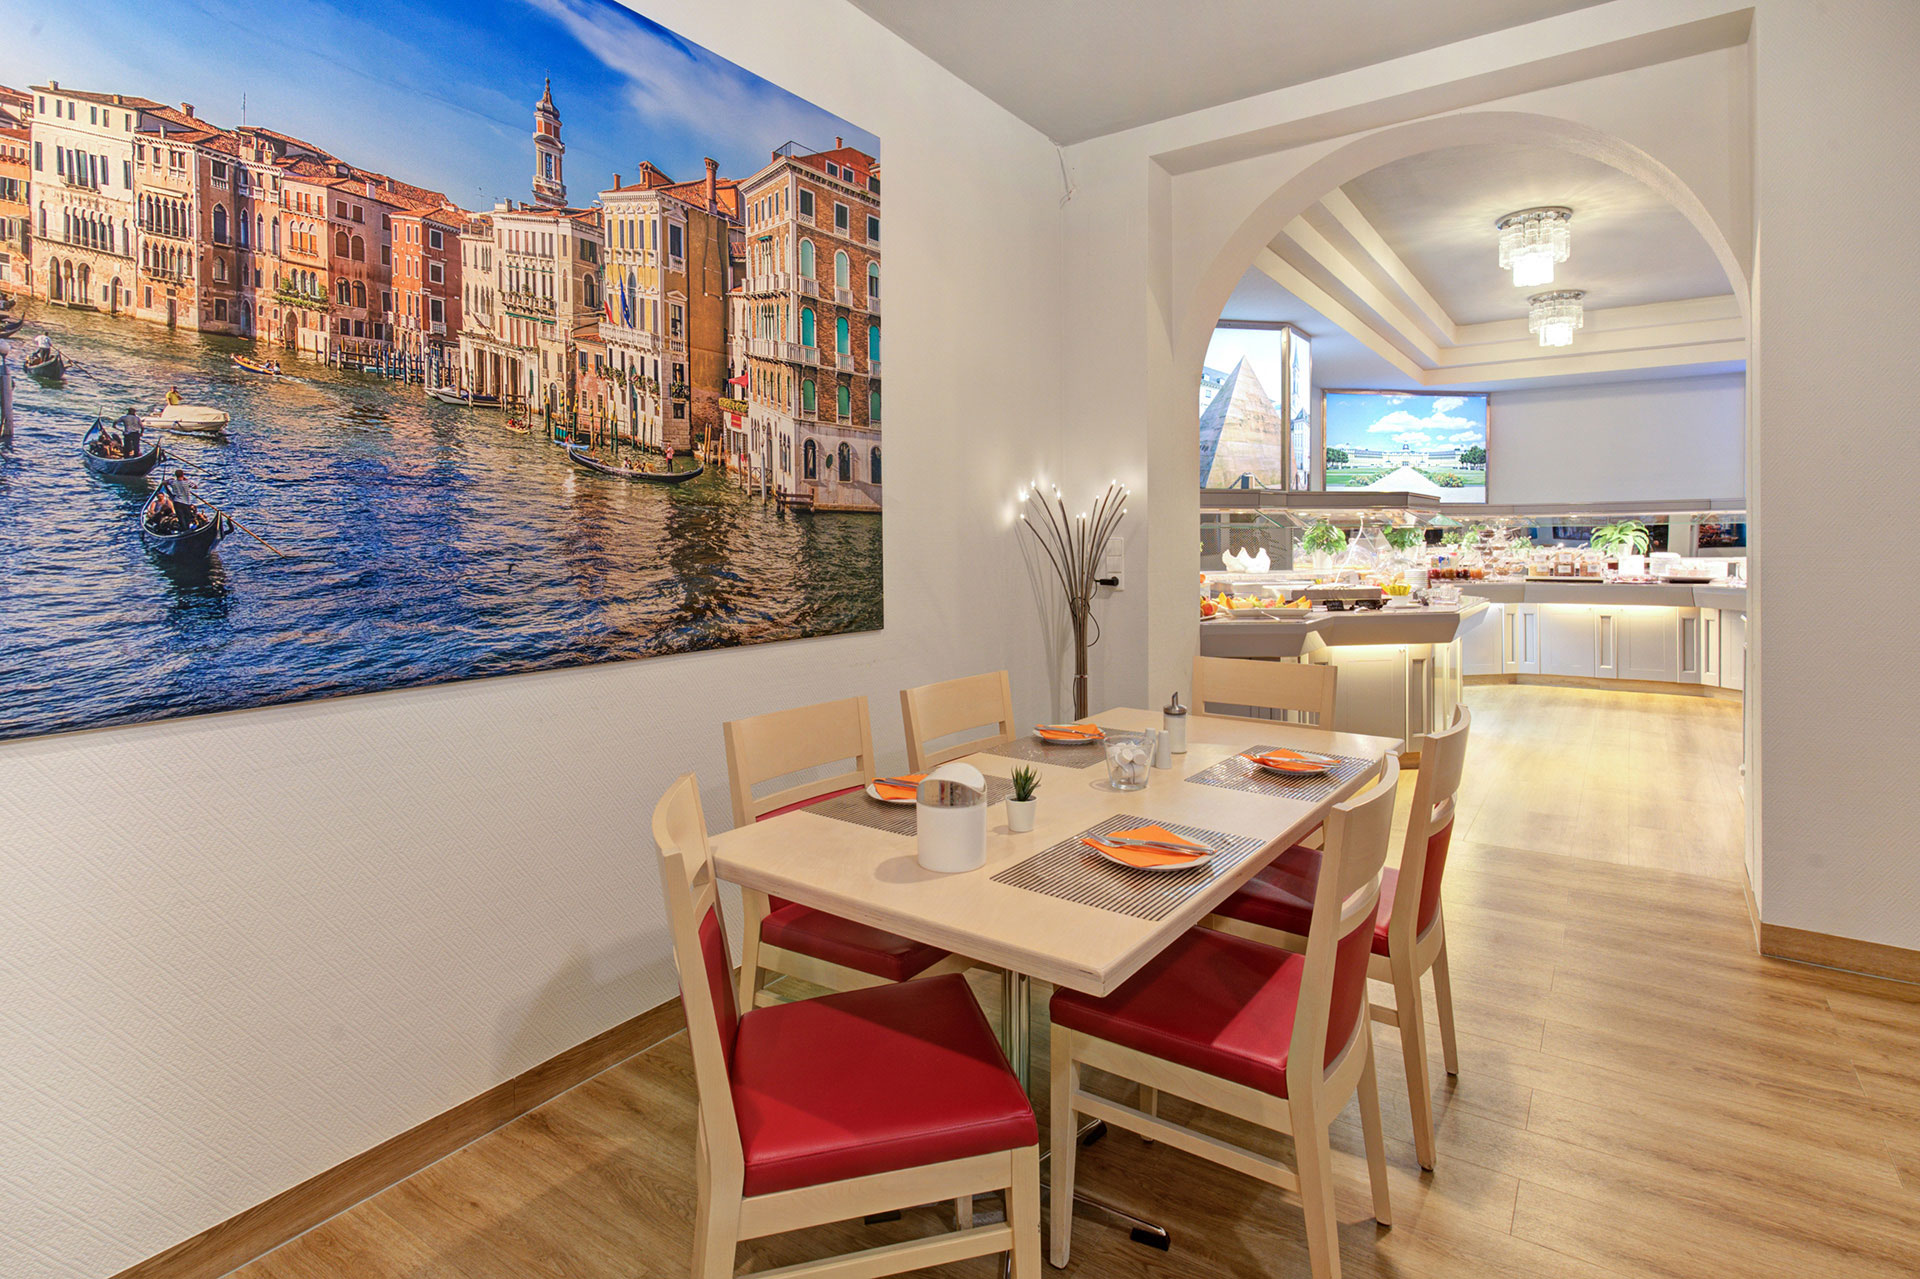 frühstückstisch im hotel mit bild von Venedig und Blick auf frühstücksbuffet